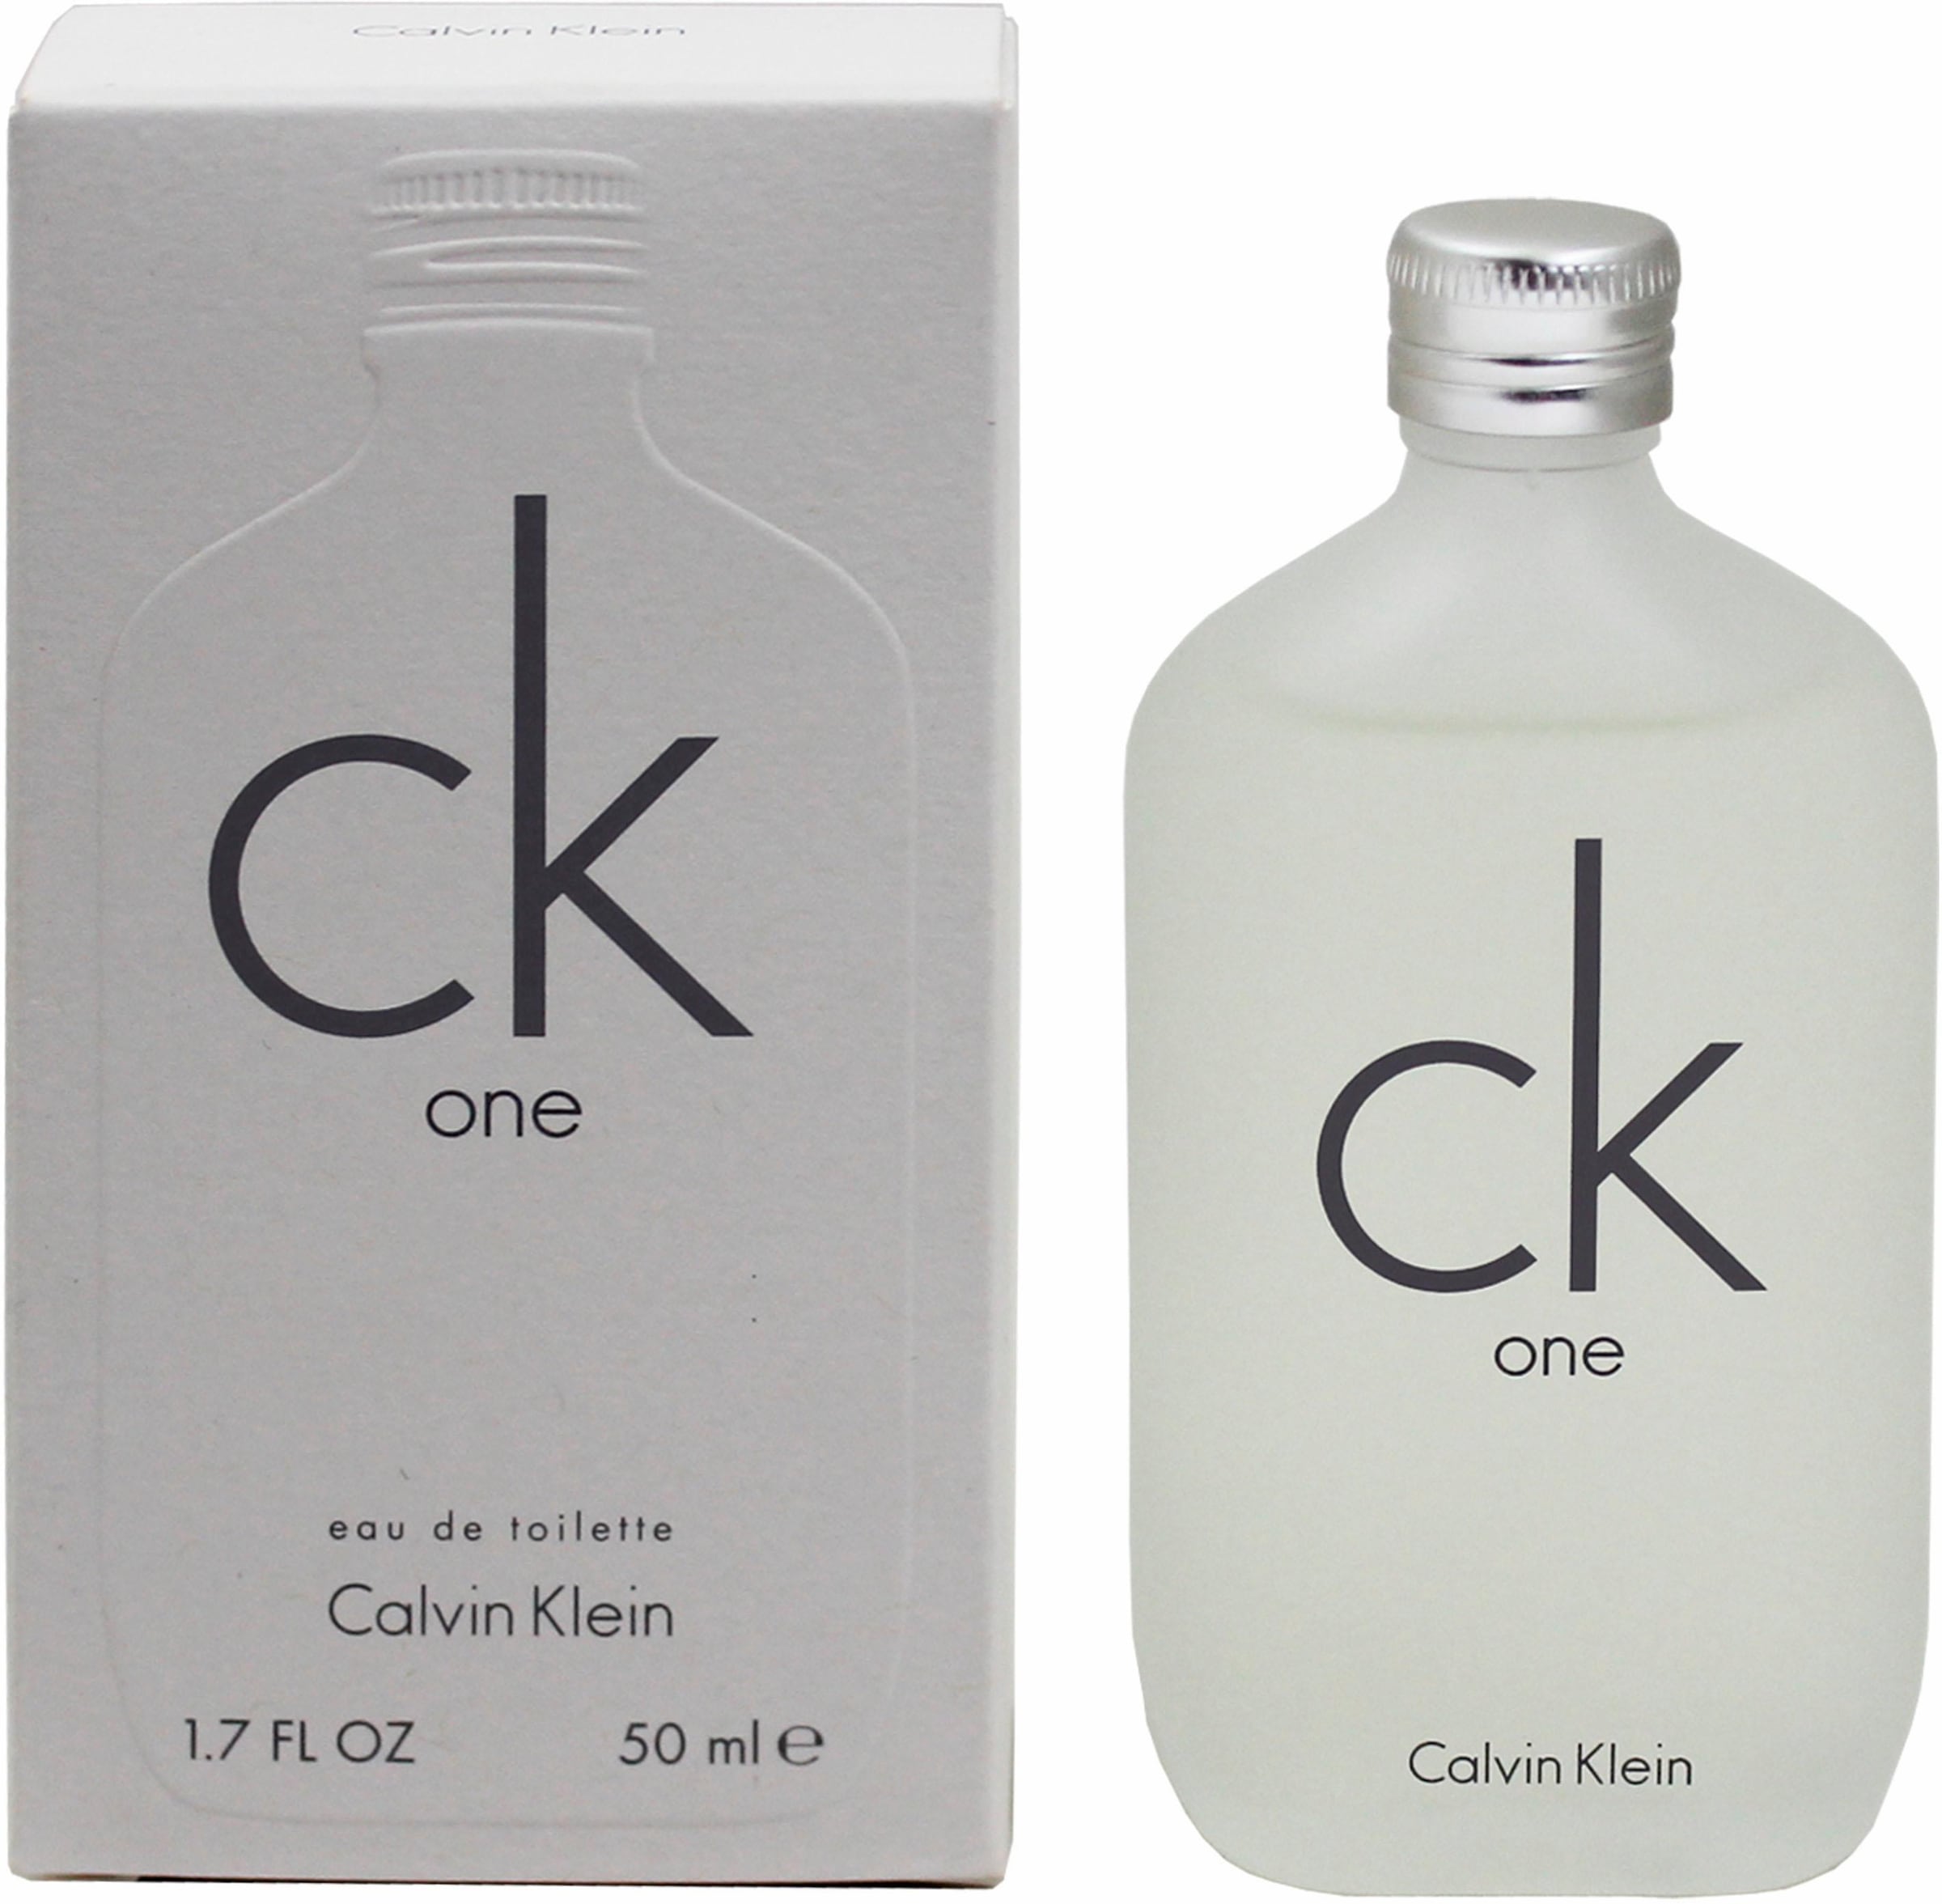 Calvin Klein »cK tlg.) online One«, Duft-Set (2 kaufen